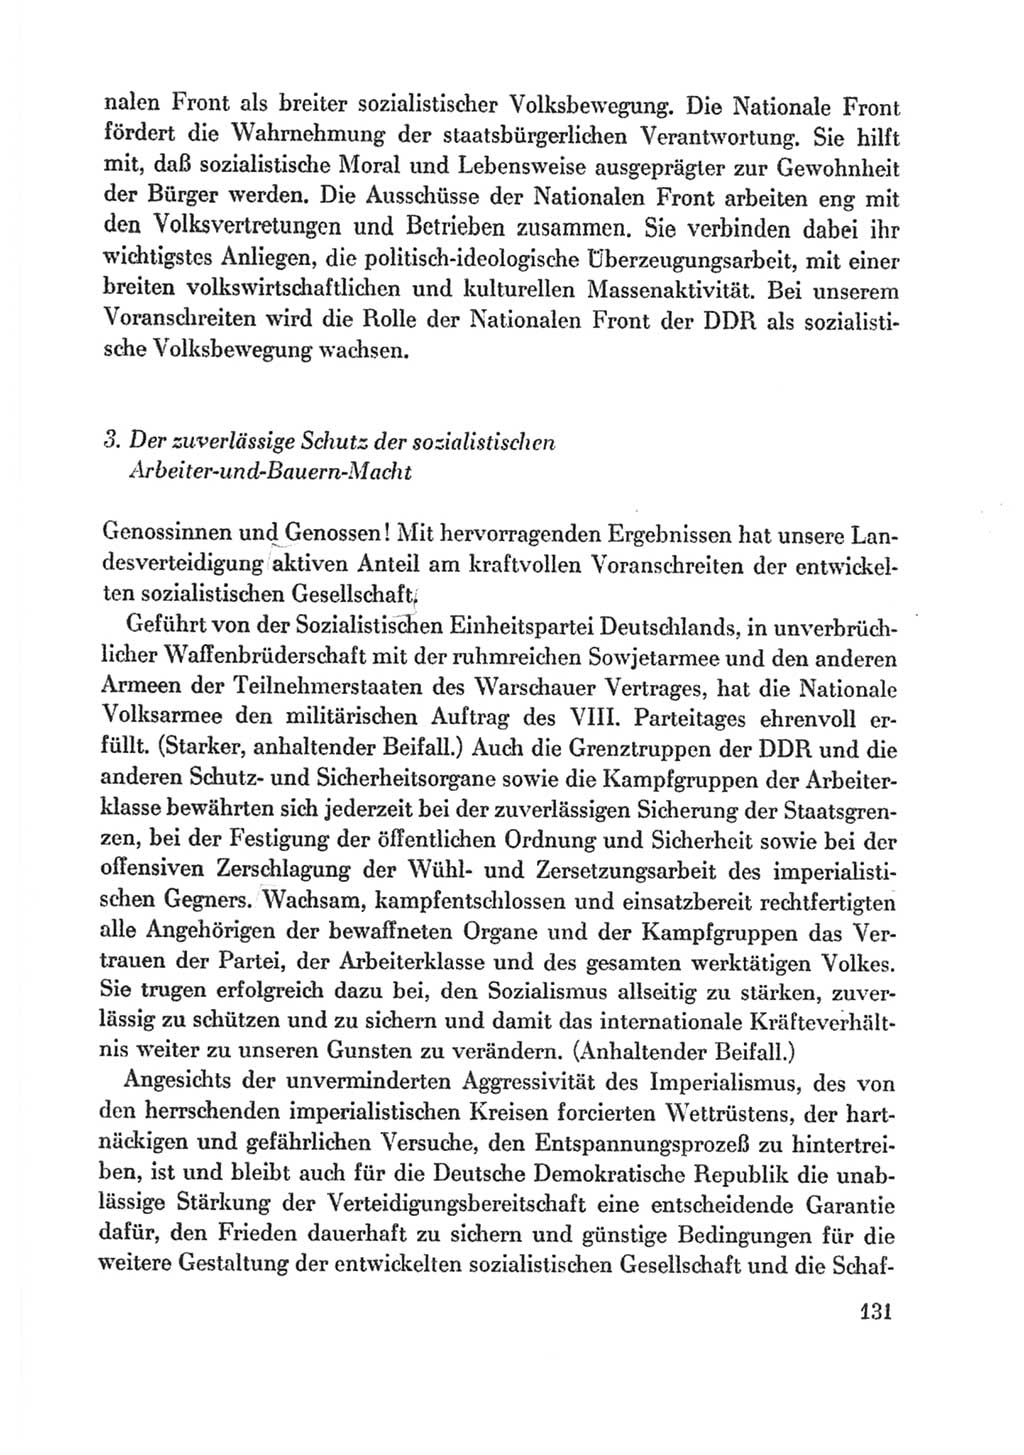 Protokoll der Verhandlungen des Ⅸ. Parteitages der Sozialistischen Einheitspartei Deutschlands (SED) [Deutsche Demokratische Republik (DDR)] 1976, Band 1, Seite 131 (Prot. Verh. Ⅸ. PT SED DDR 1976, Bd. 1, S. 131)